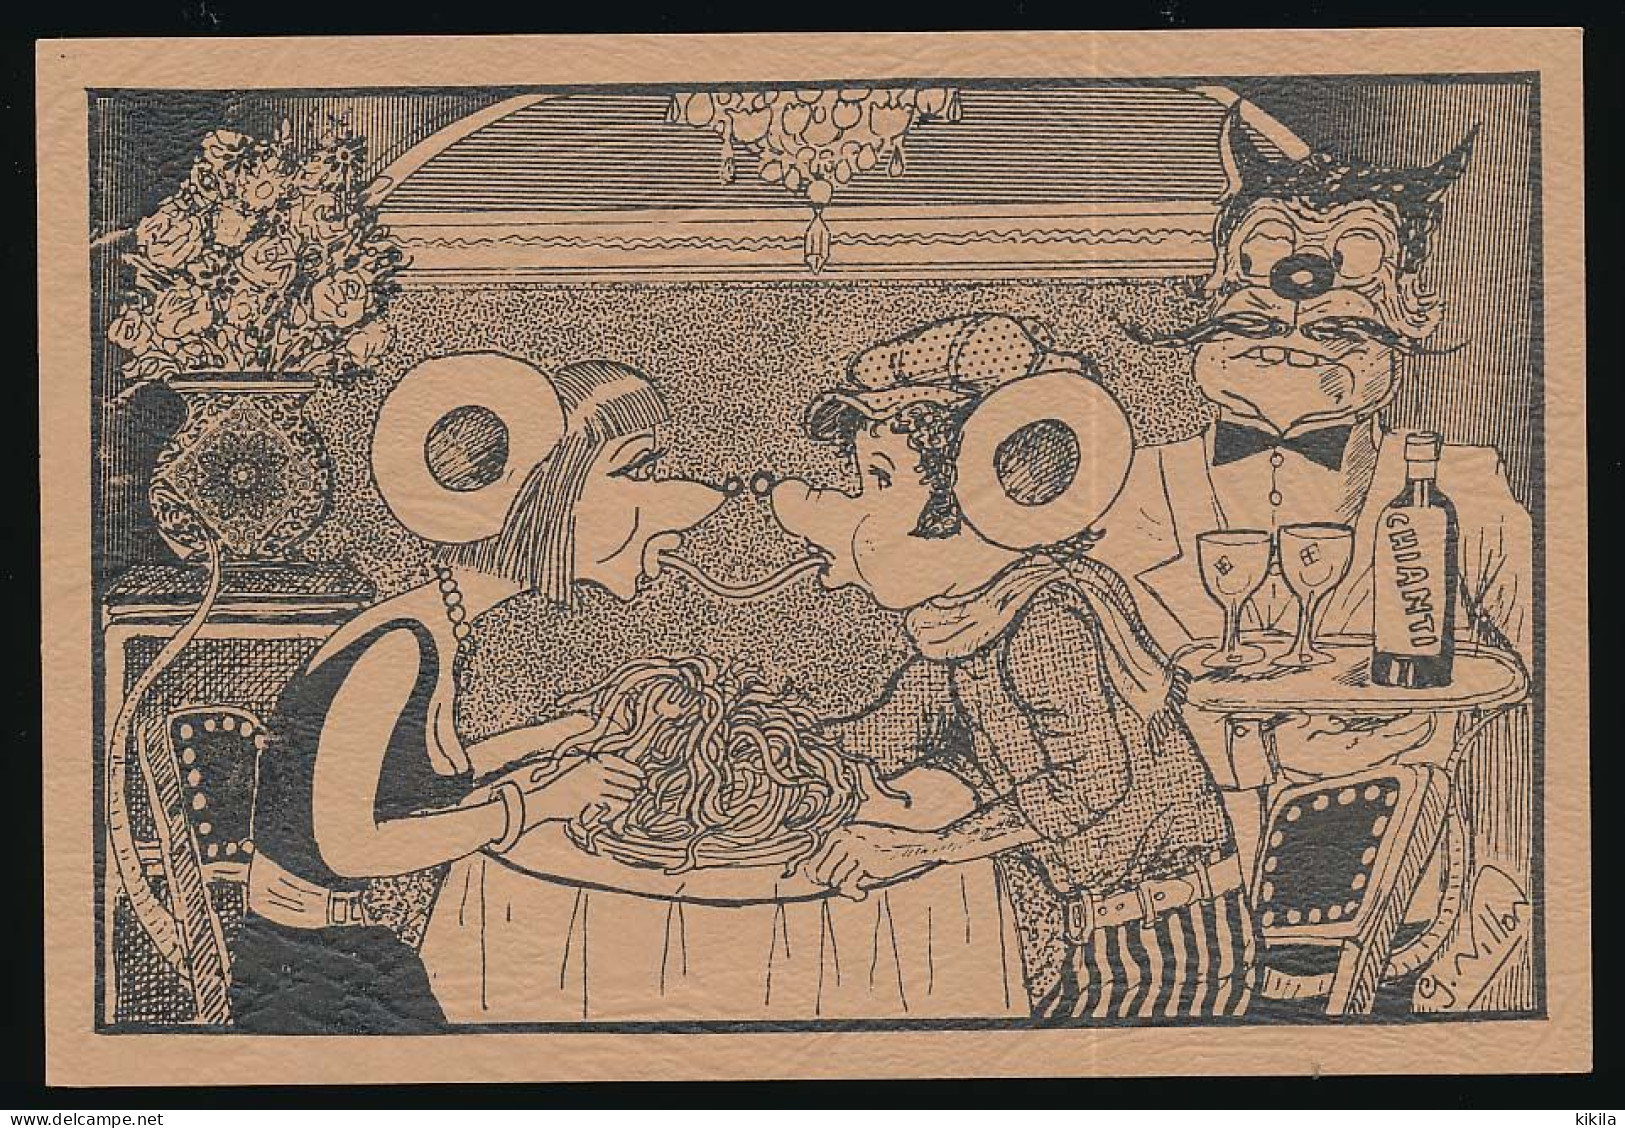 CPSM/CPM 10.5 X 15 Rhône GIVORS 13° Foire à La Paperasse 9/10-11*1991 Illustrateur Georges Millon Souris Rat Restaurant - Givors